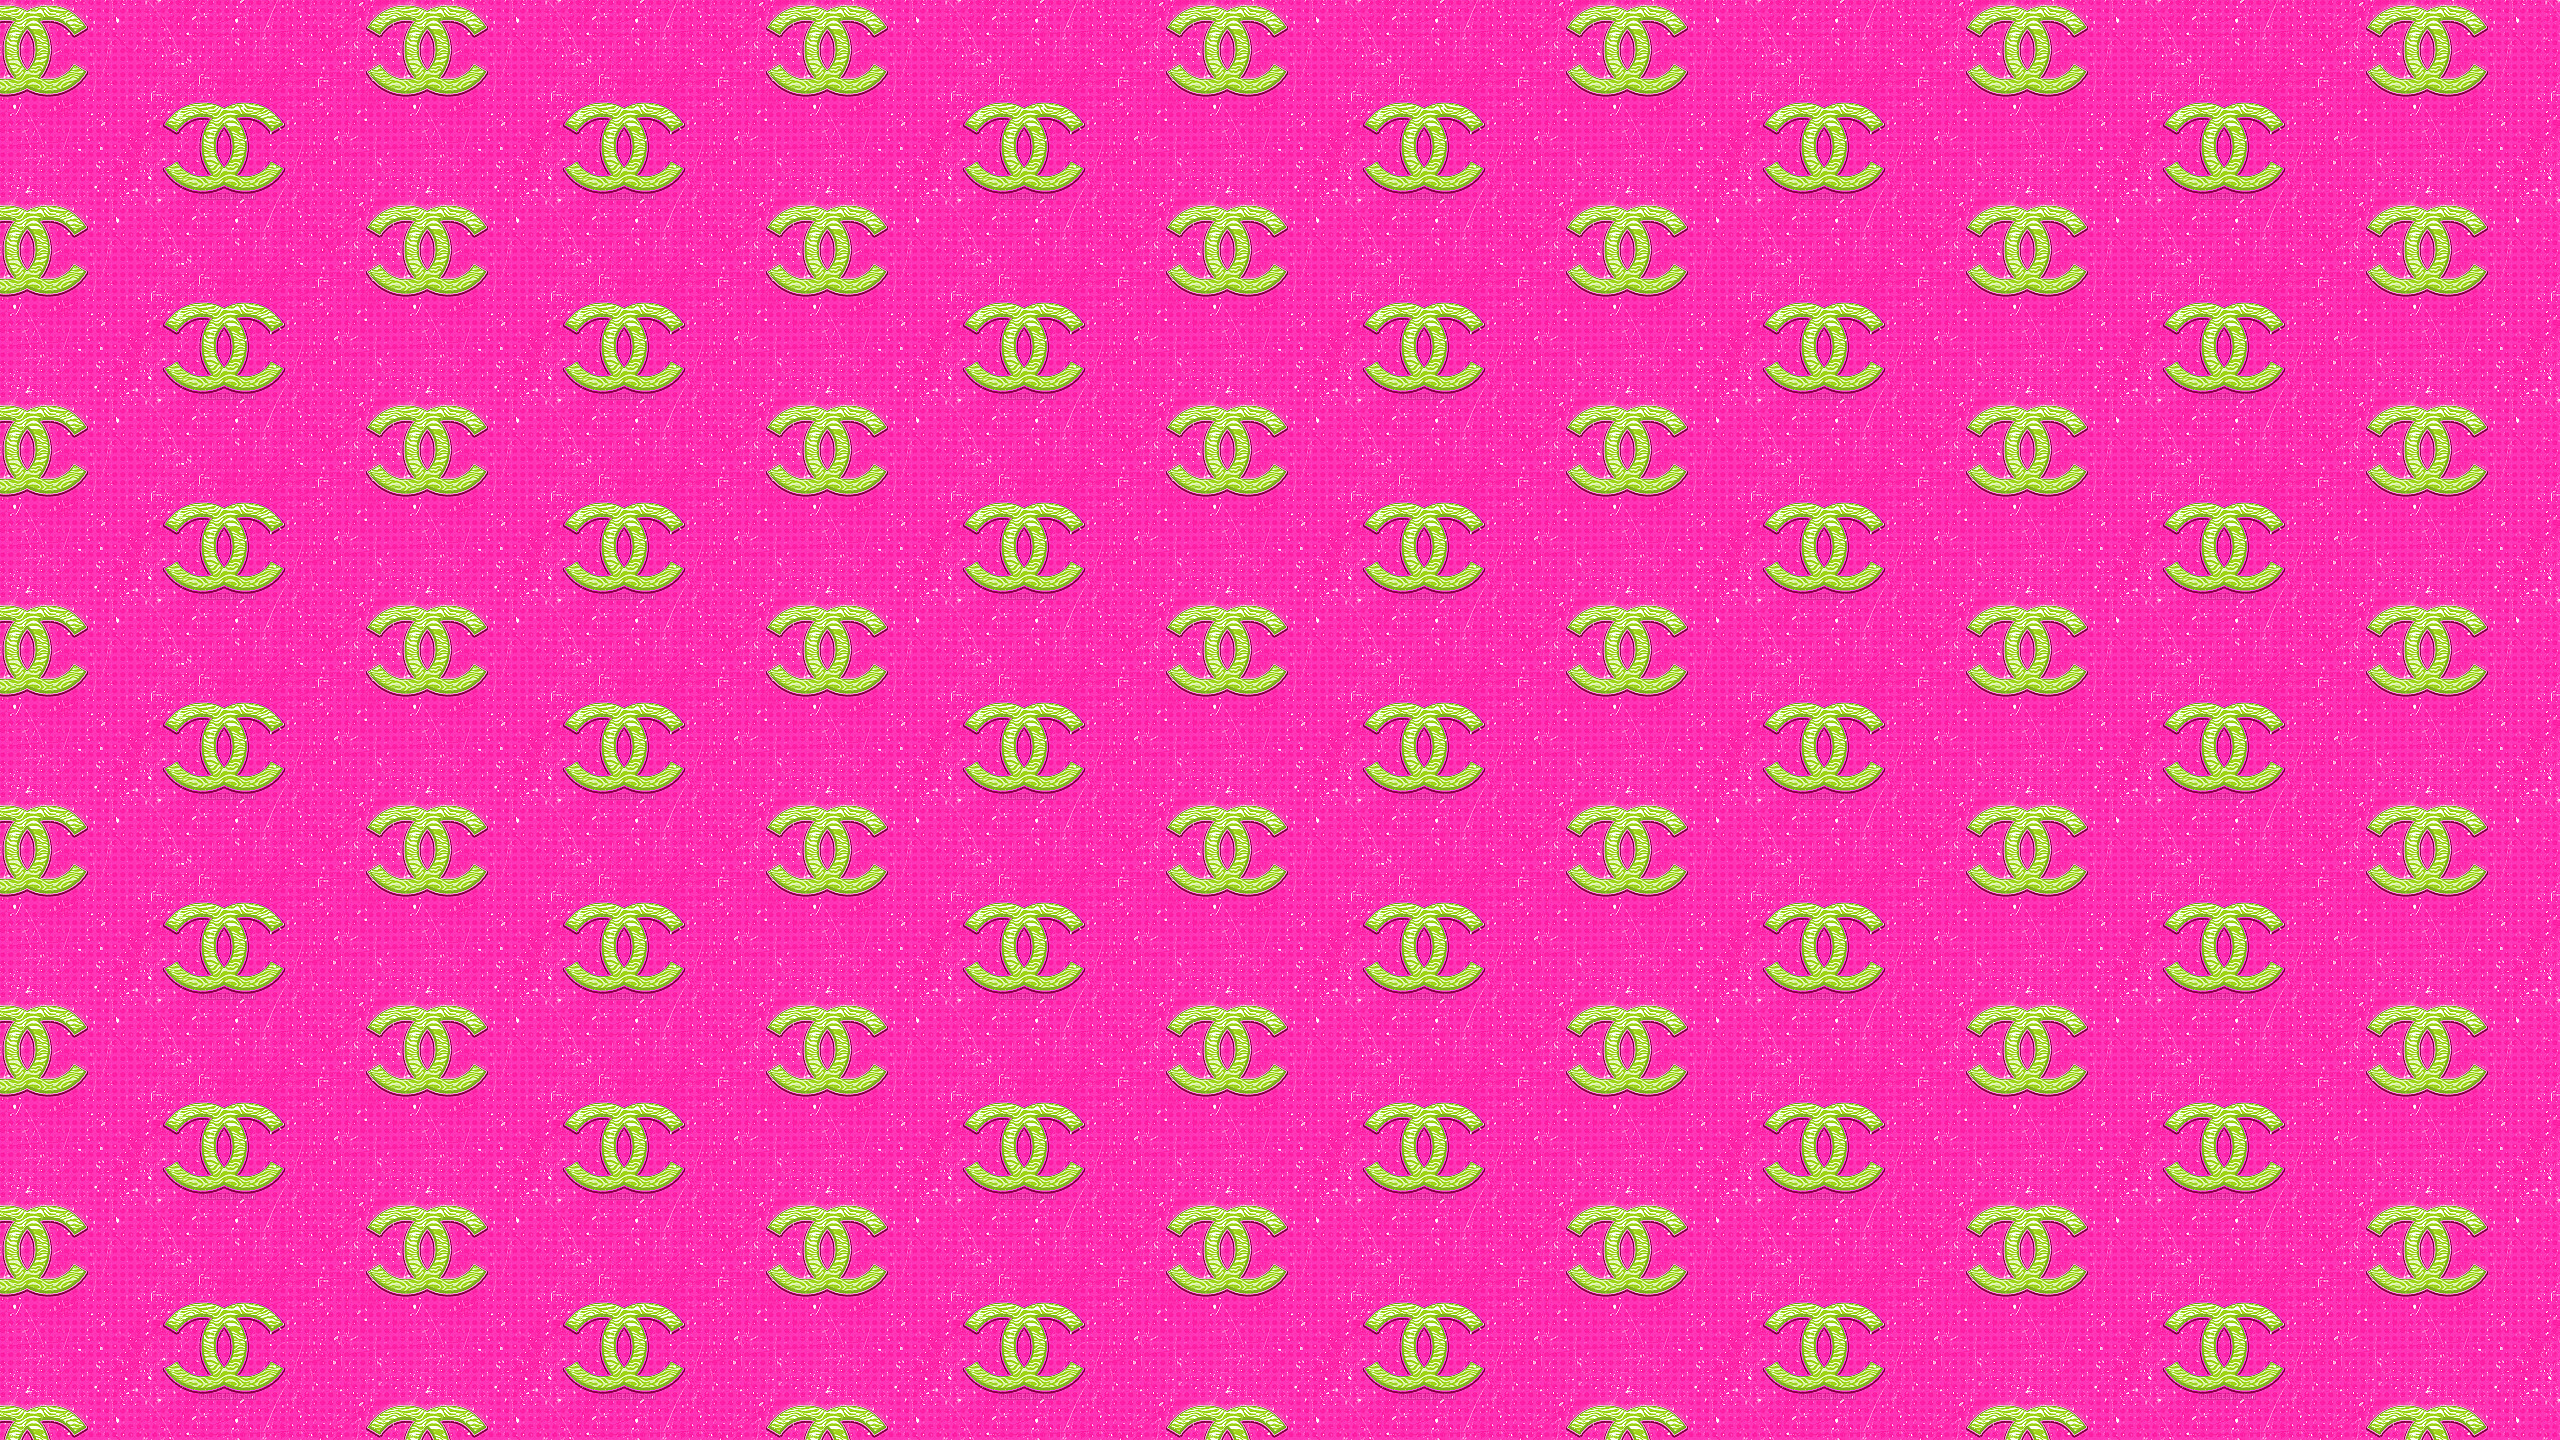 2560x1440 Pink Chanel Logo Pattern Wallpaper 54425